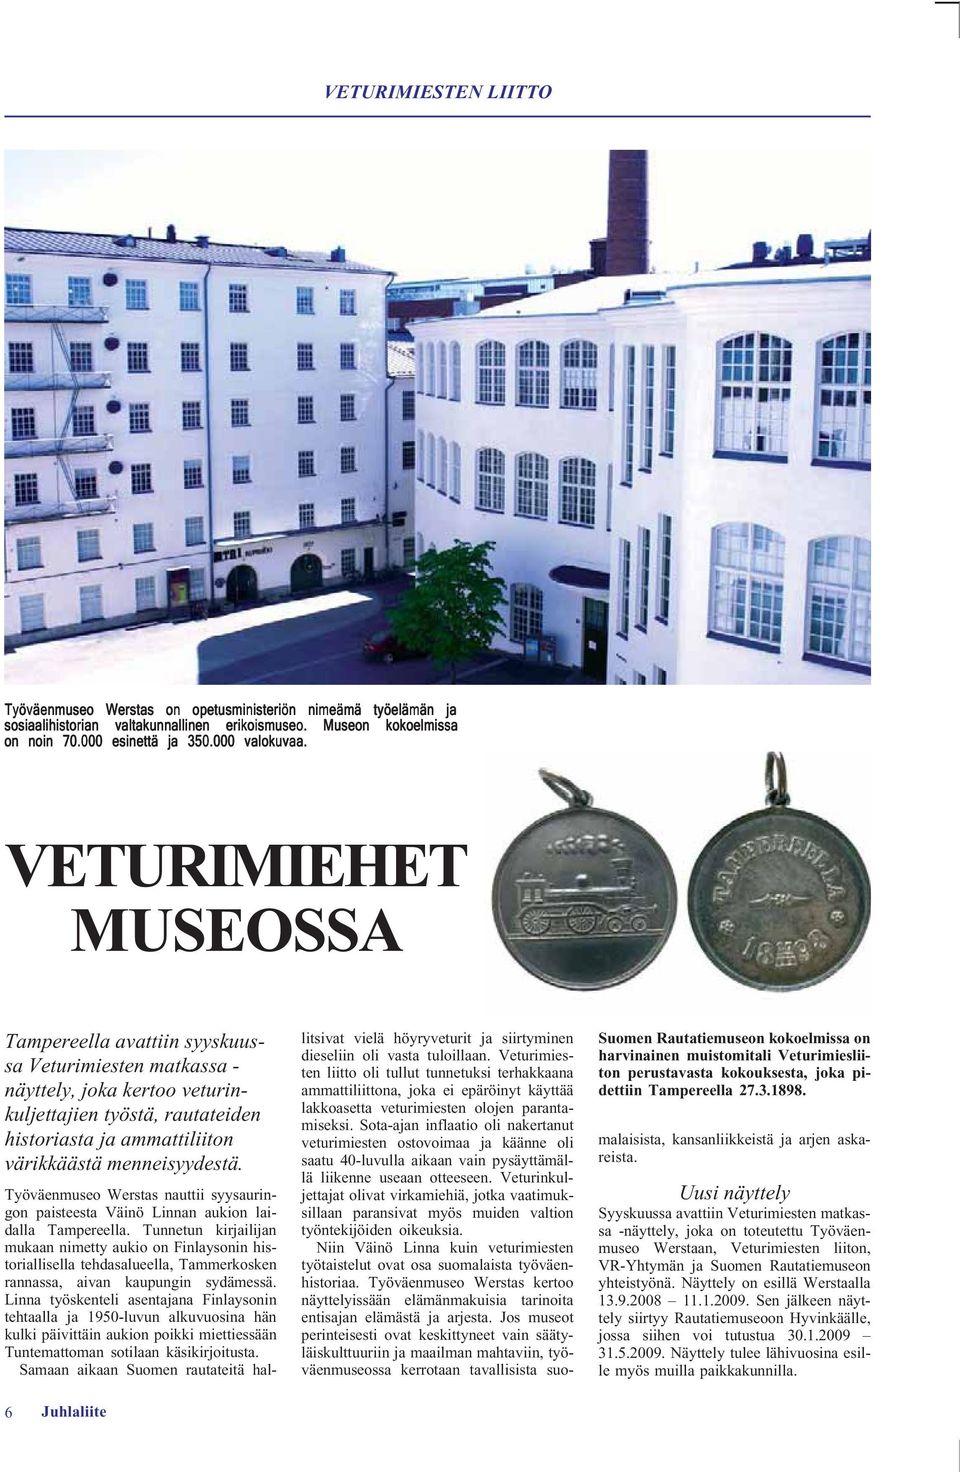 6 Juhlaliite Suomen Rautatiemuseon kokoelmissa on harvinainen muistomitali Veturimiesliiton perustavasta kokouksesta, joka pidettiin Tampereella 27.3.1898.